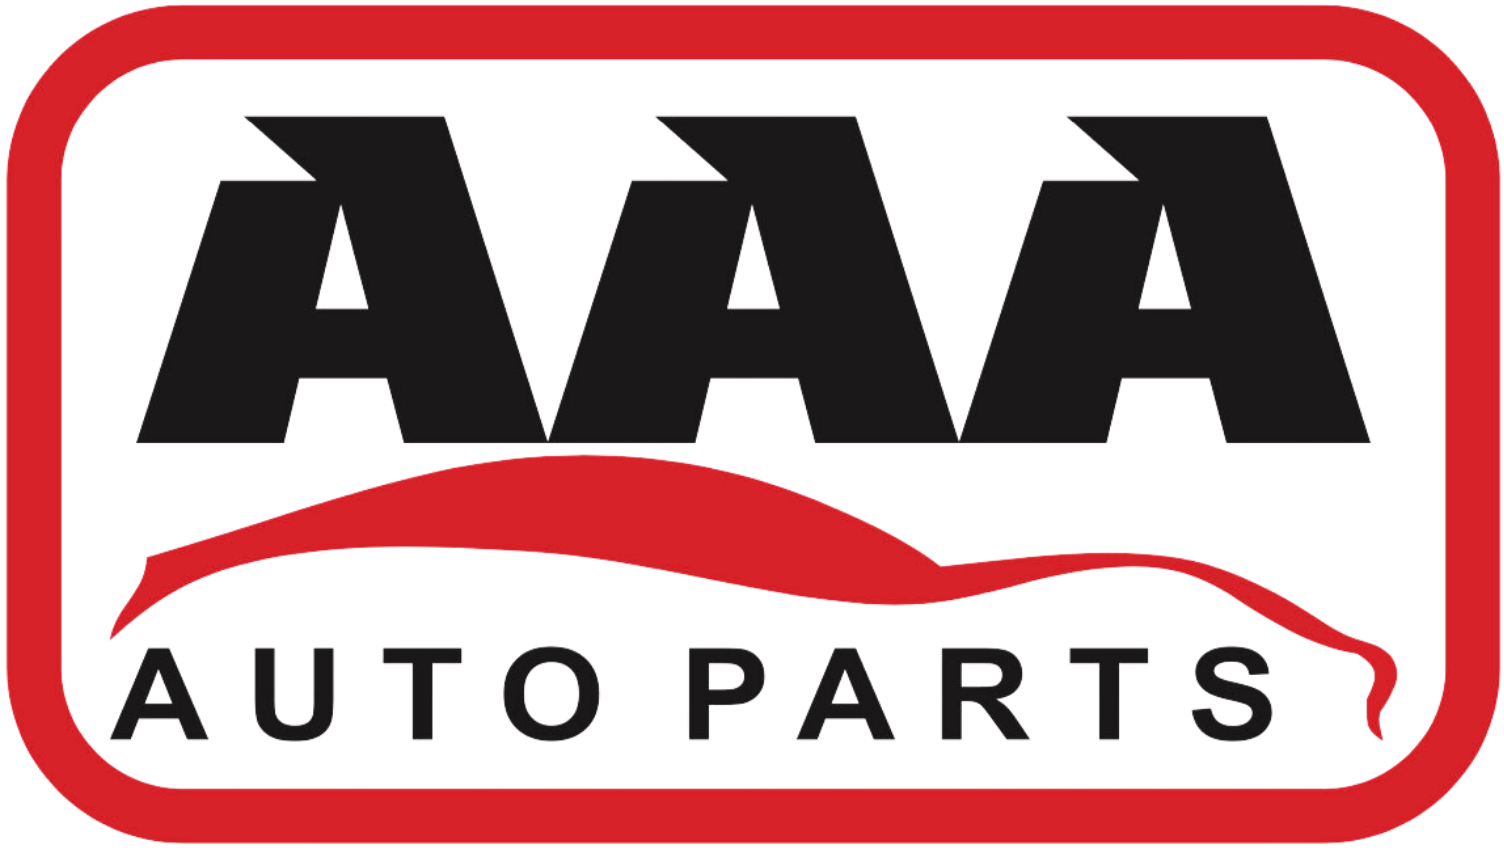 Used Auto Parts, AAA Auto Parts